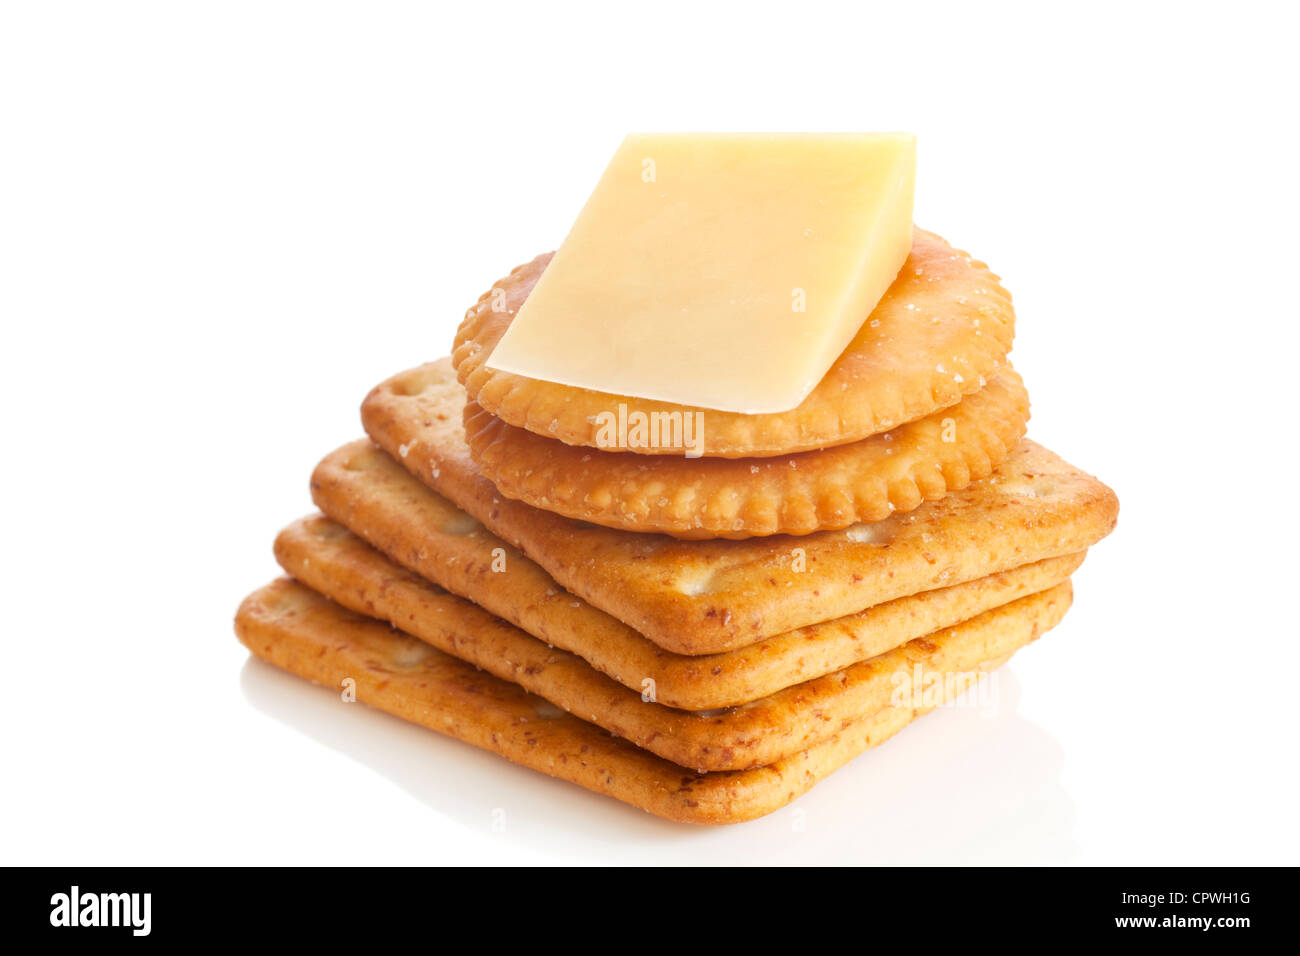 El queso Cheddar y galletas. Foto de stock